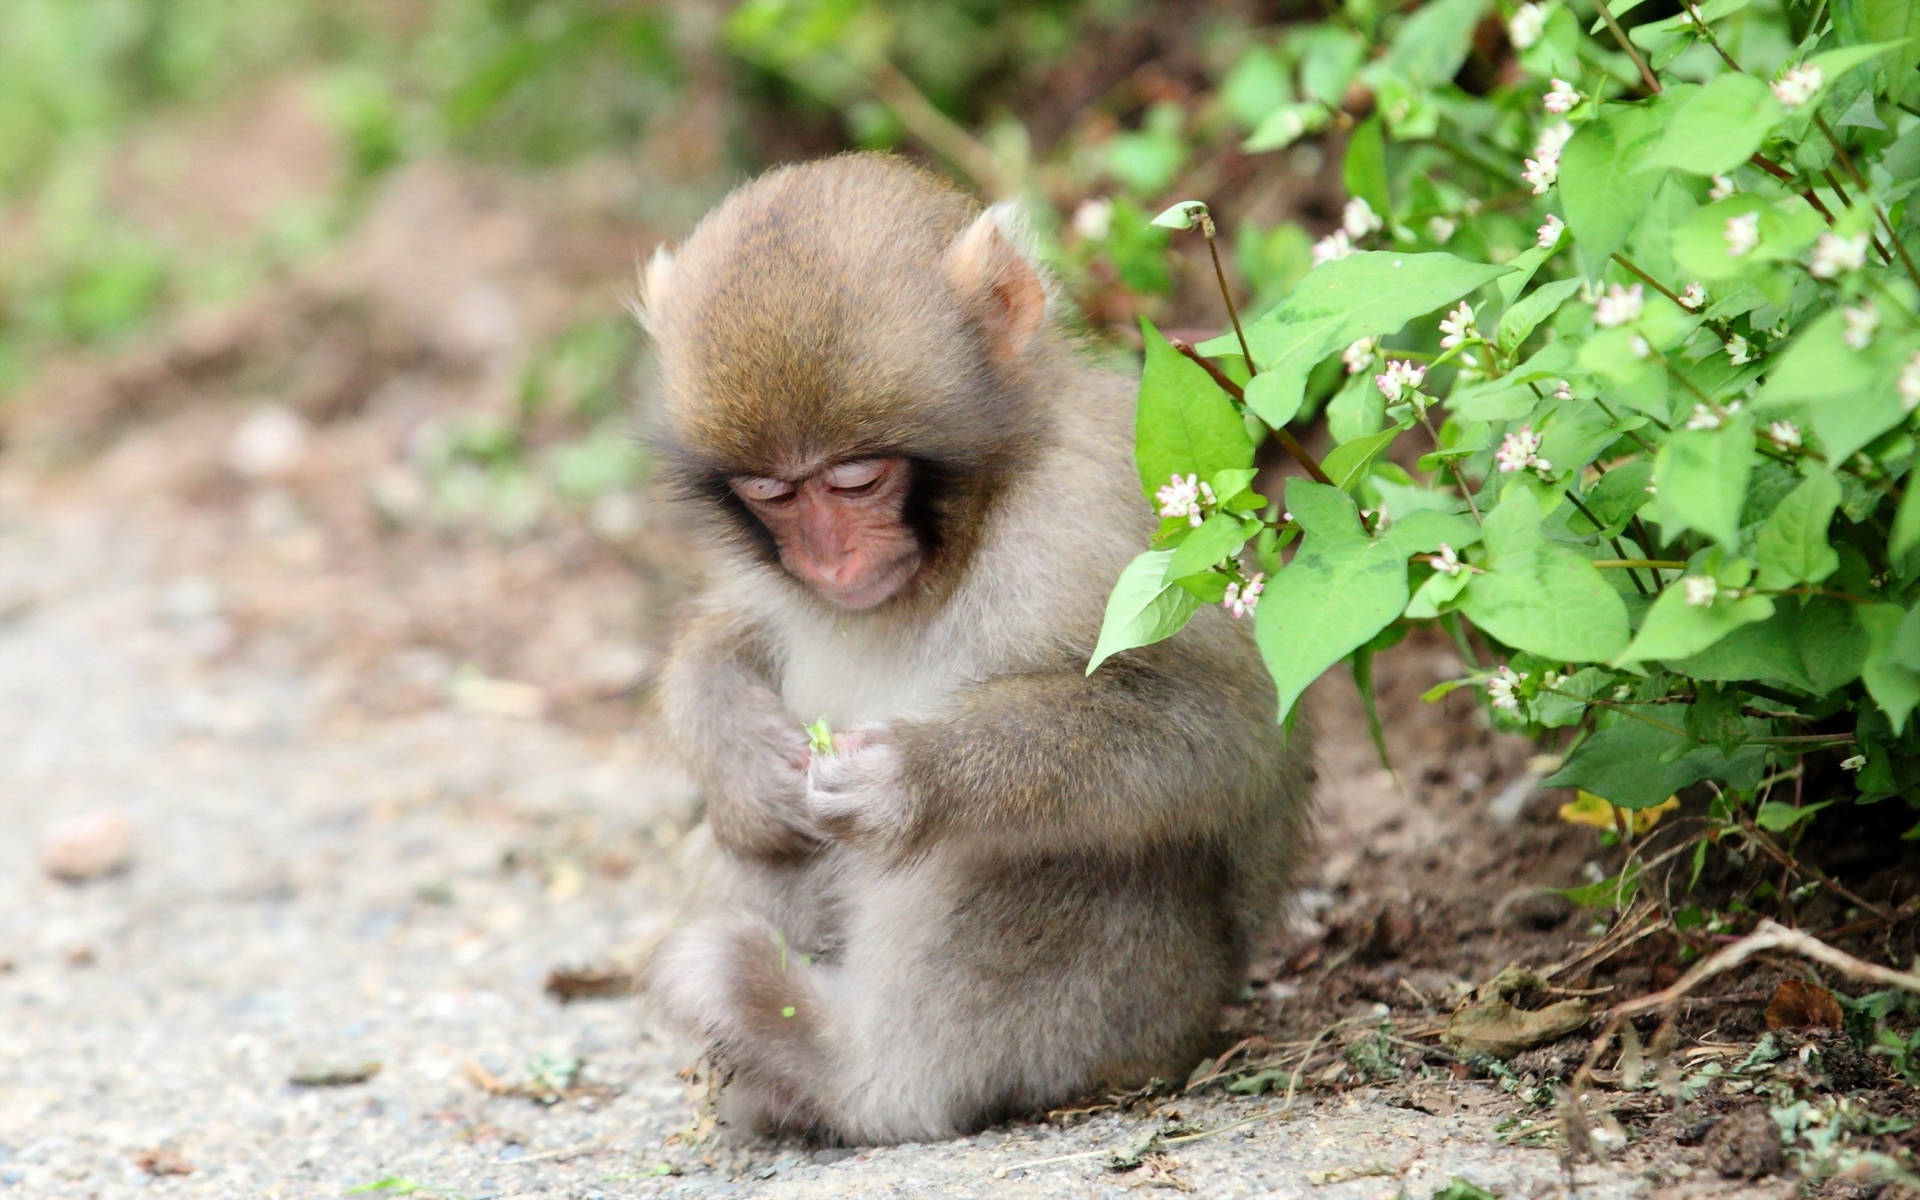 Cute Monkey Near Flower Plant Background